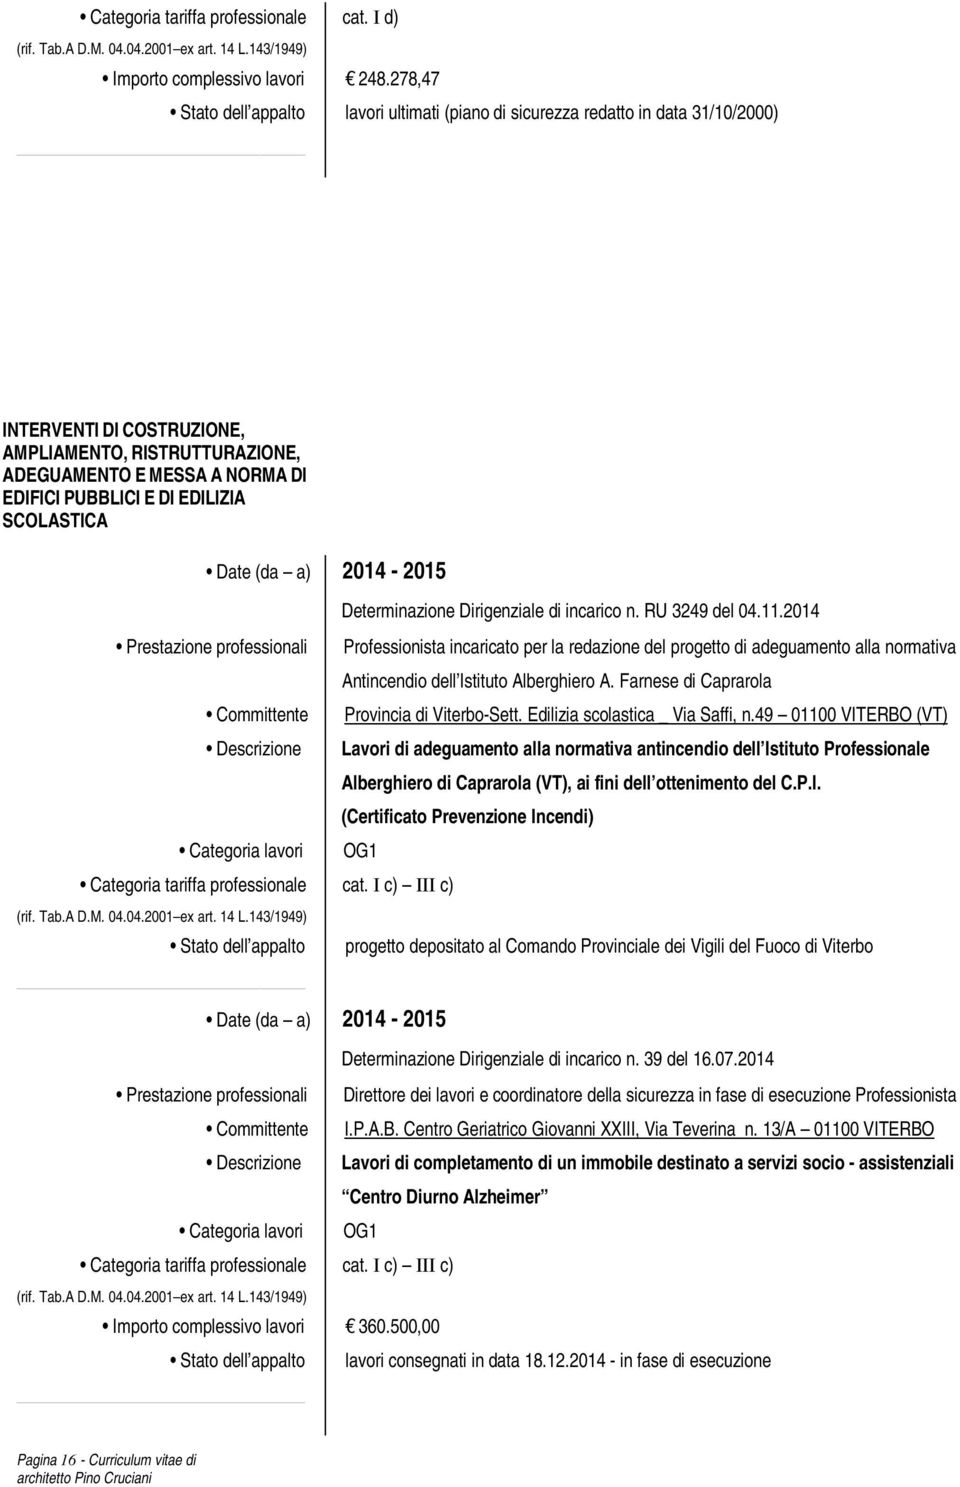 DI EDILIZIA SCOLASTICA Date (da a) 2014-2015 Categoria lavori Determinazione Dirigenziale di incarico n. RU 3249 del 04.11.